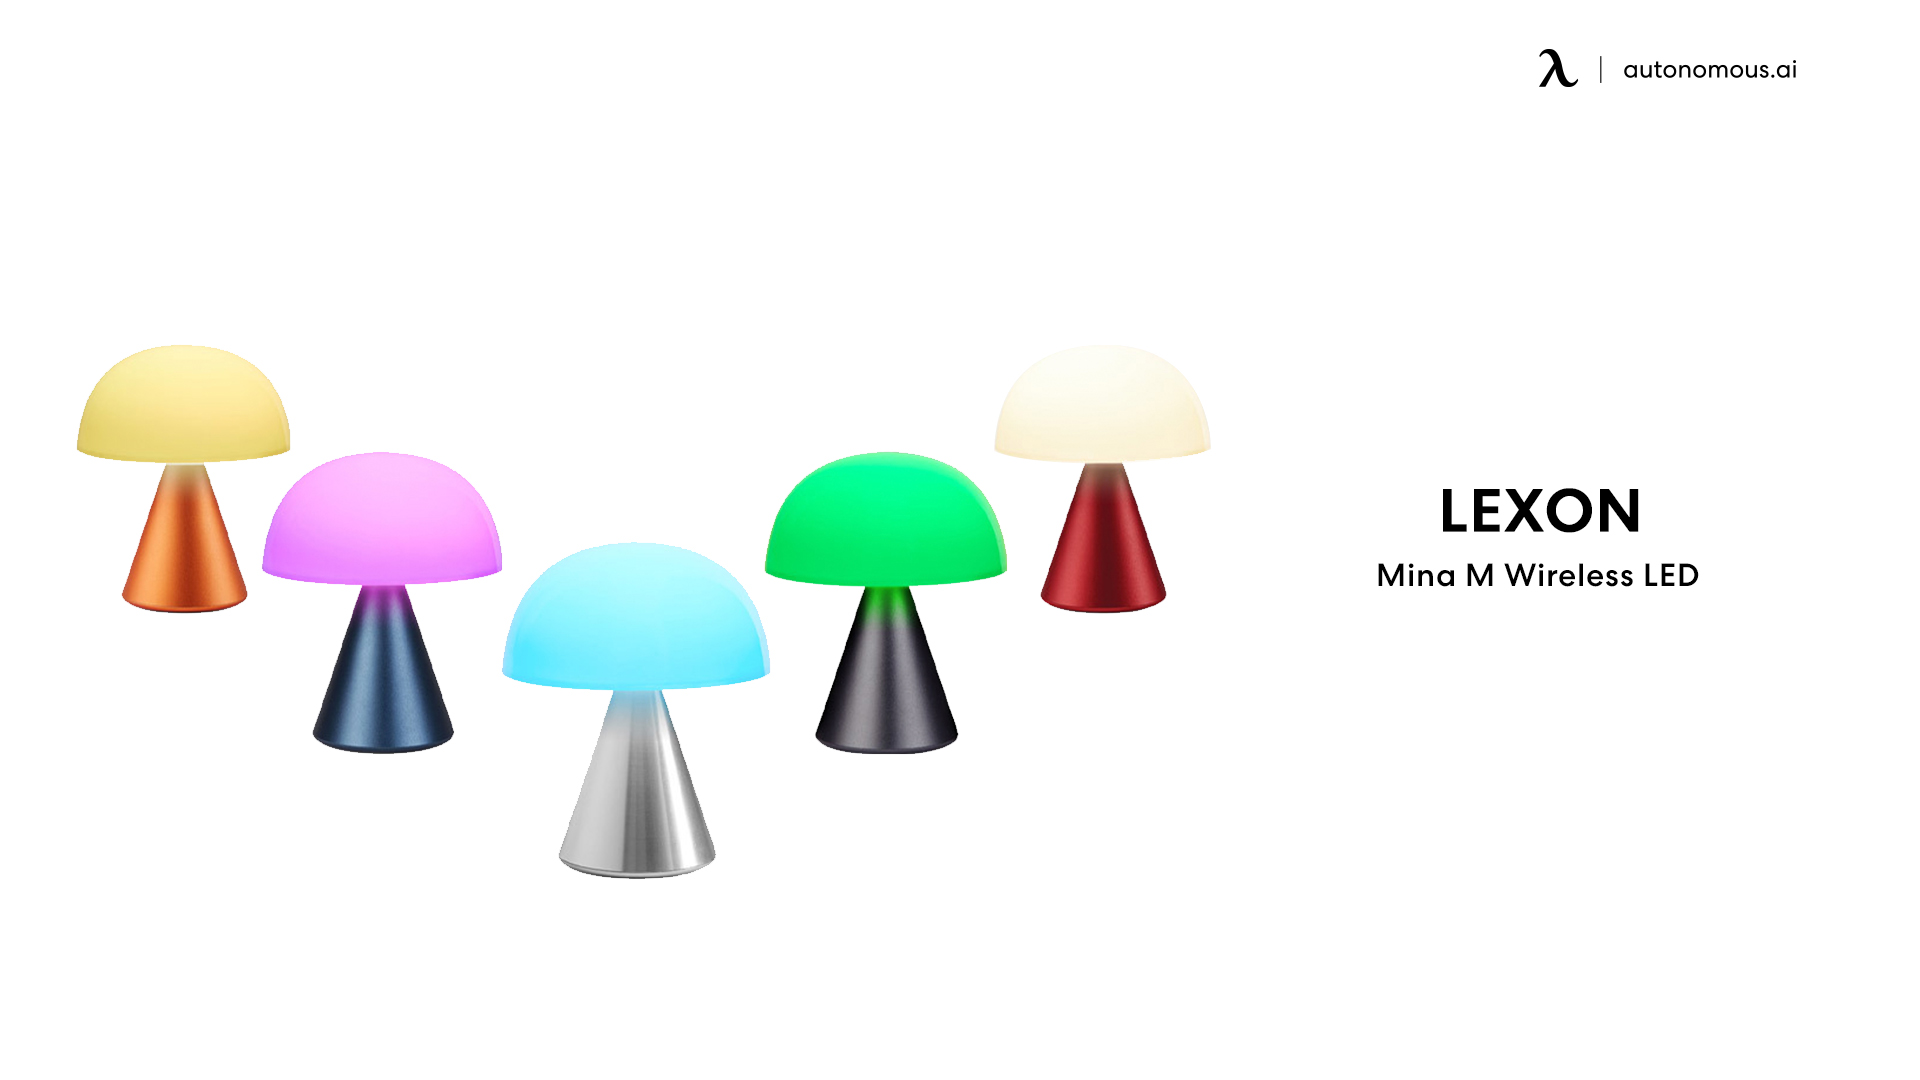 Mina M Wireless LED Lamp by Lexon